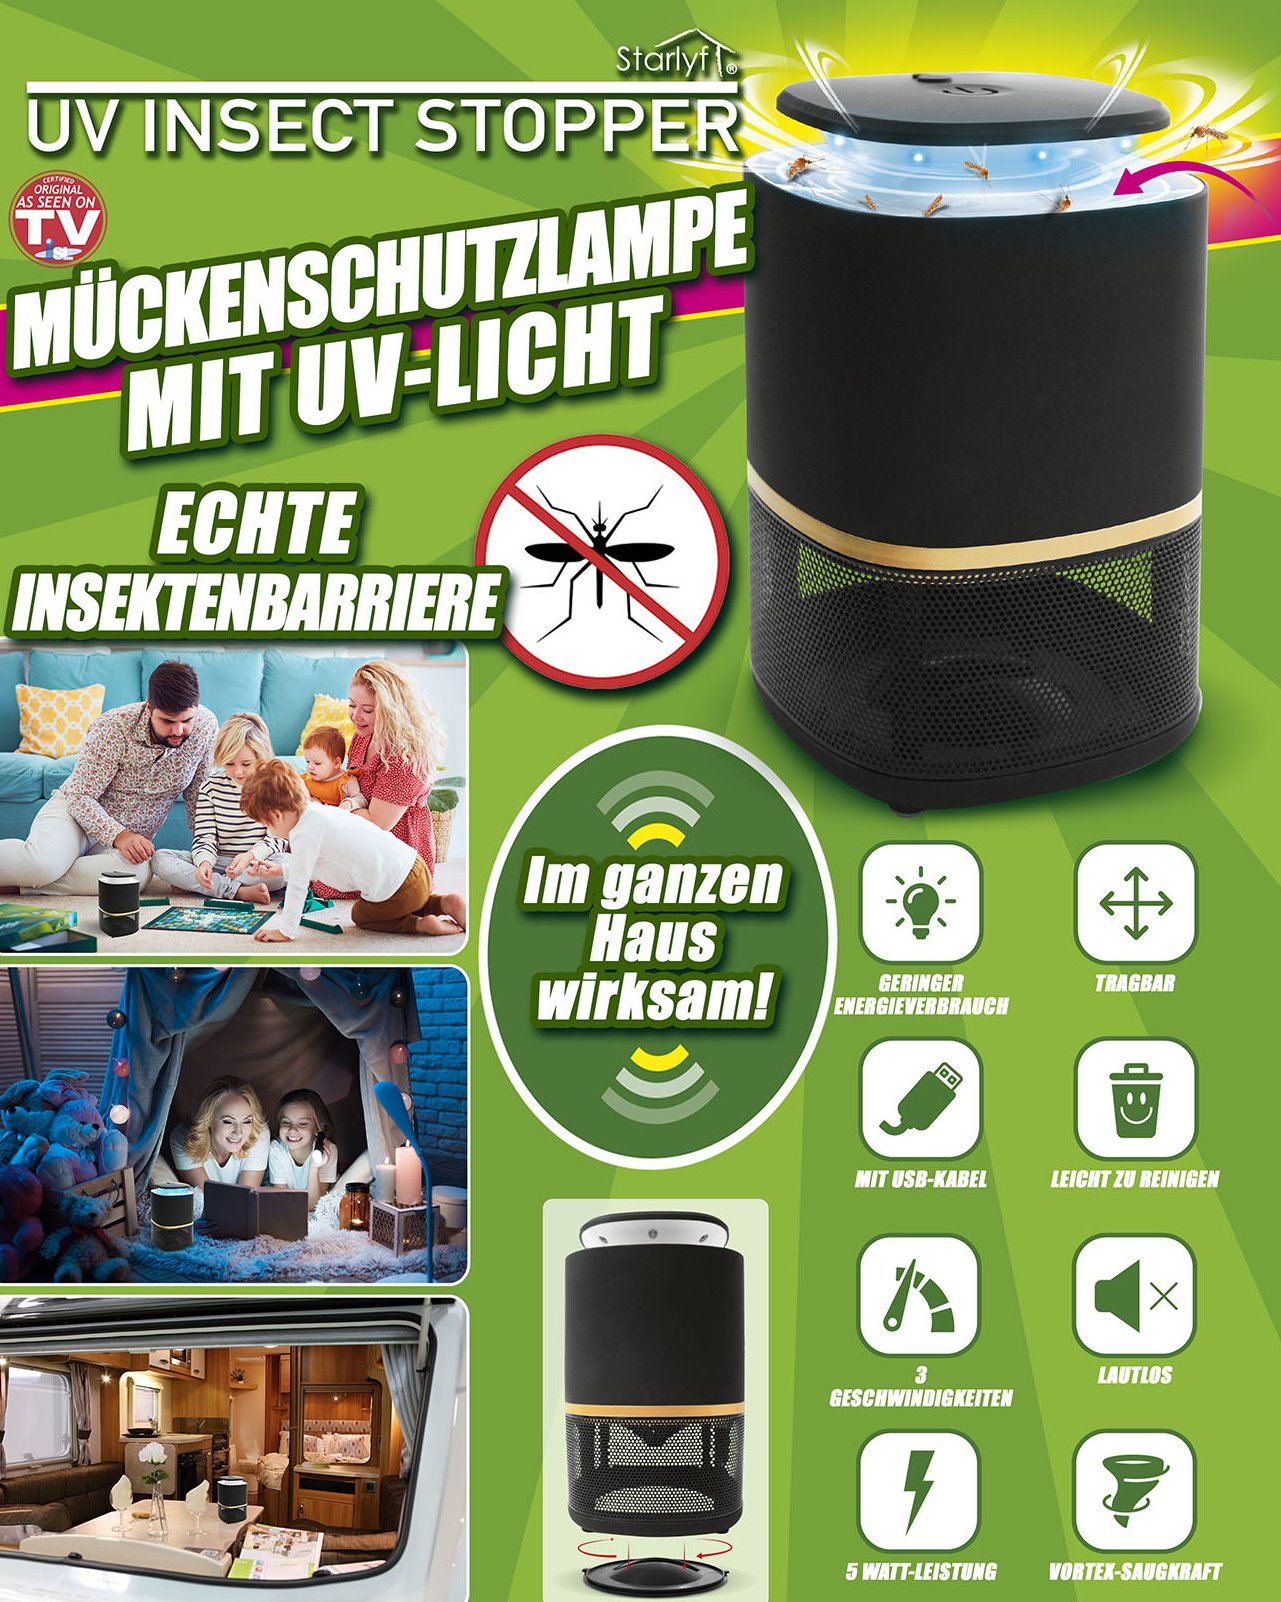 Romantiek Preek overschrijving Muggen werende lamp met UV-licht Online bij Hobby Klok